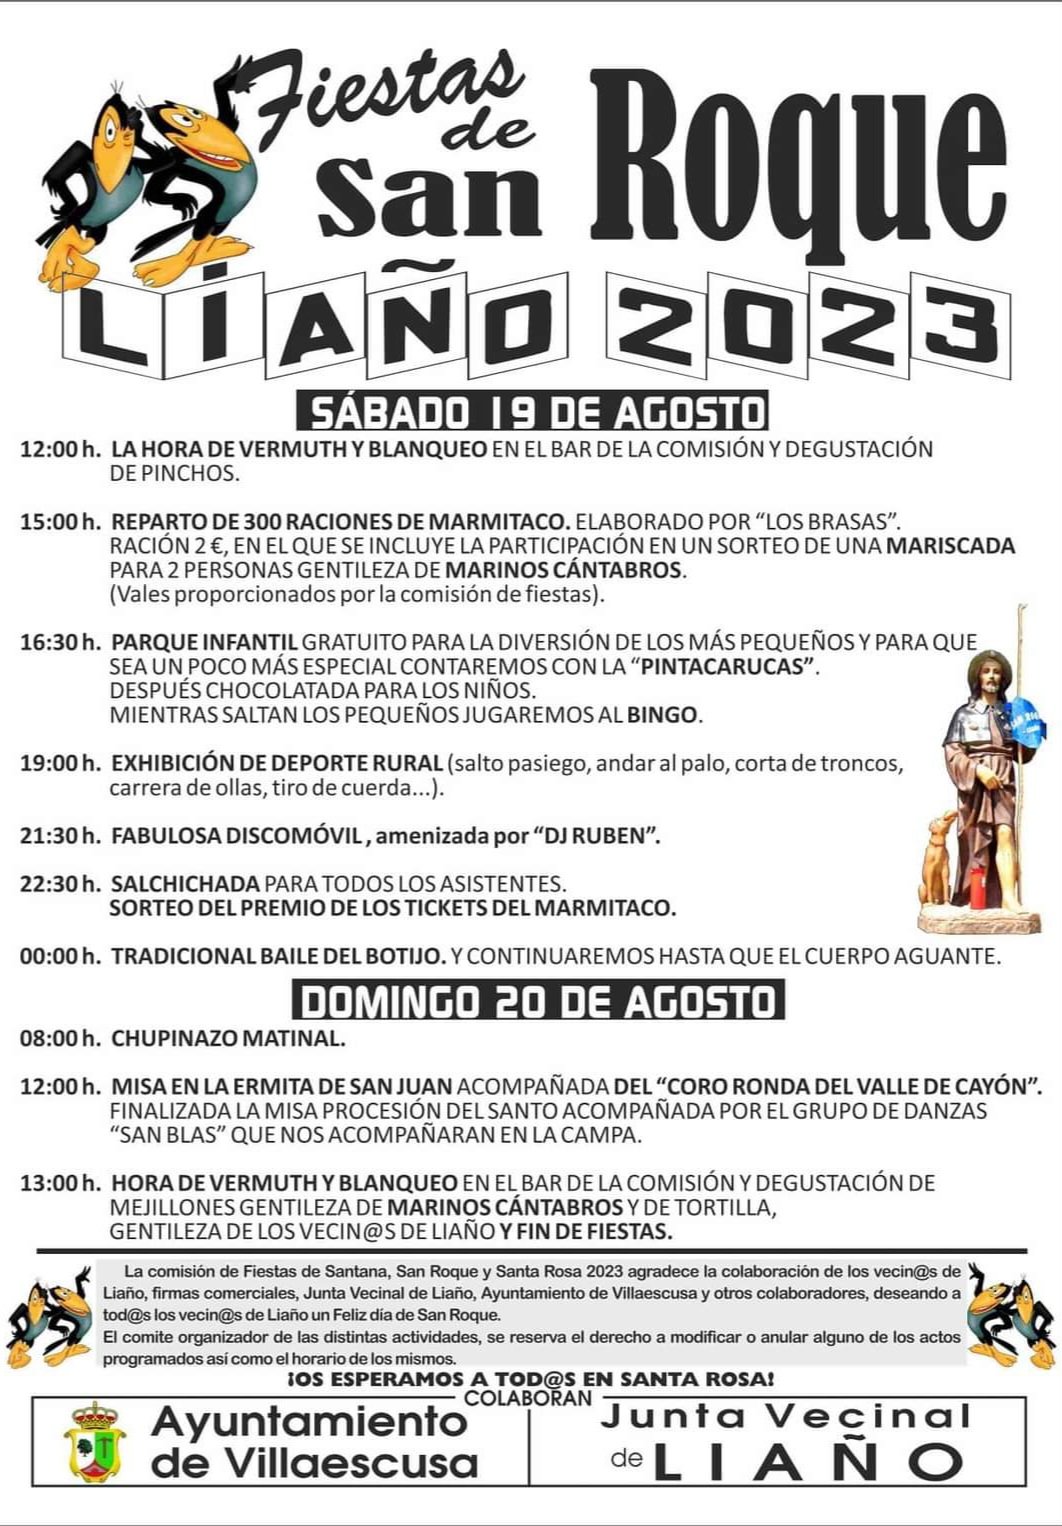 Fiestas de San Roque Liaño 2023